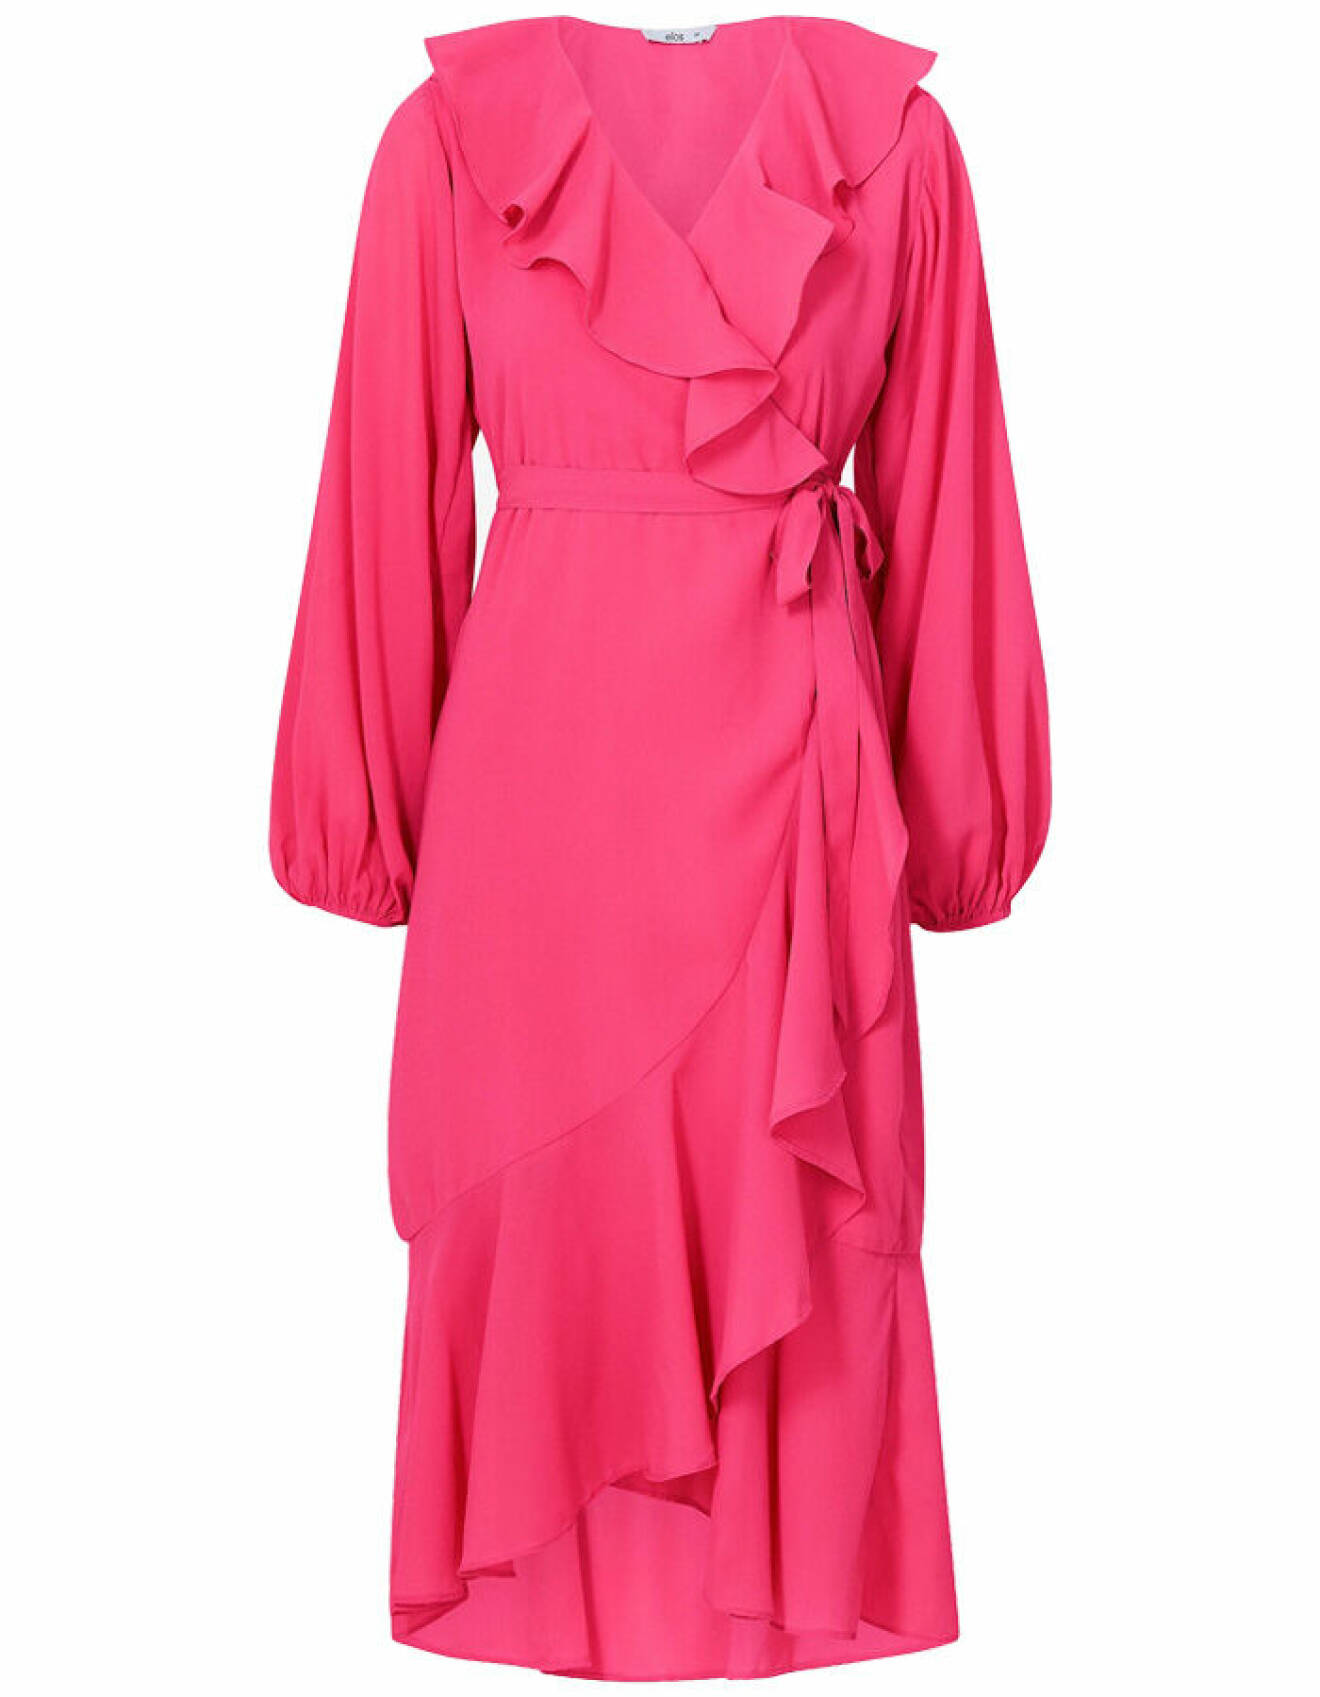 rosa silkesklänning med volangdetaljer från ellos för klädkoden smoking